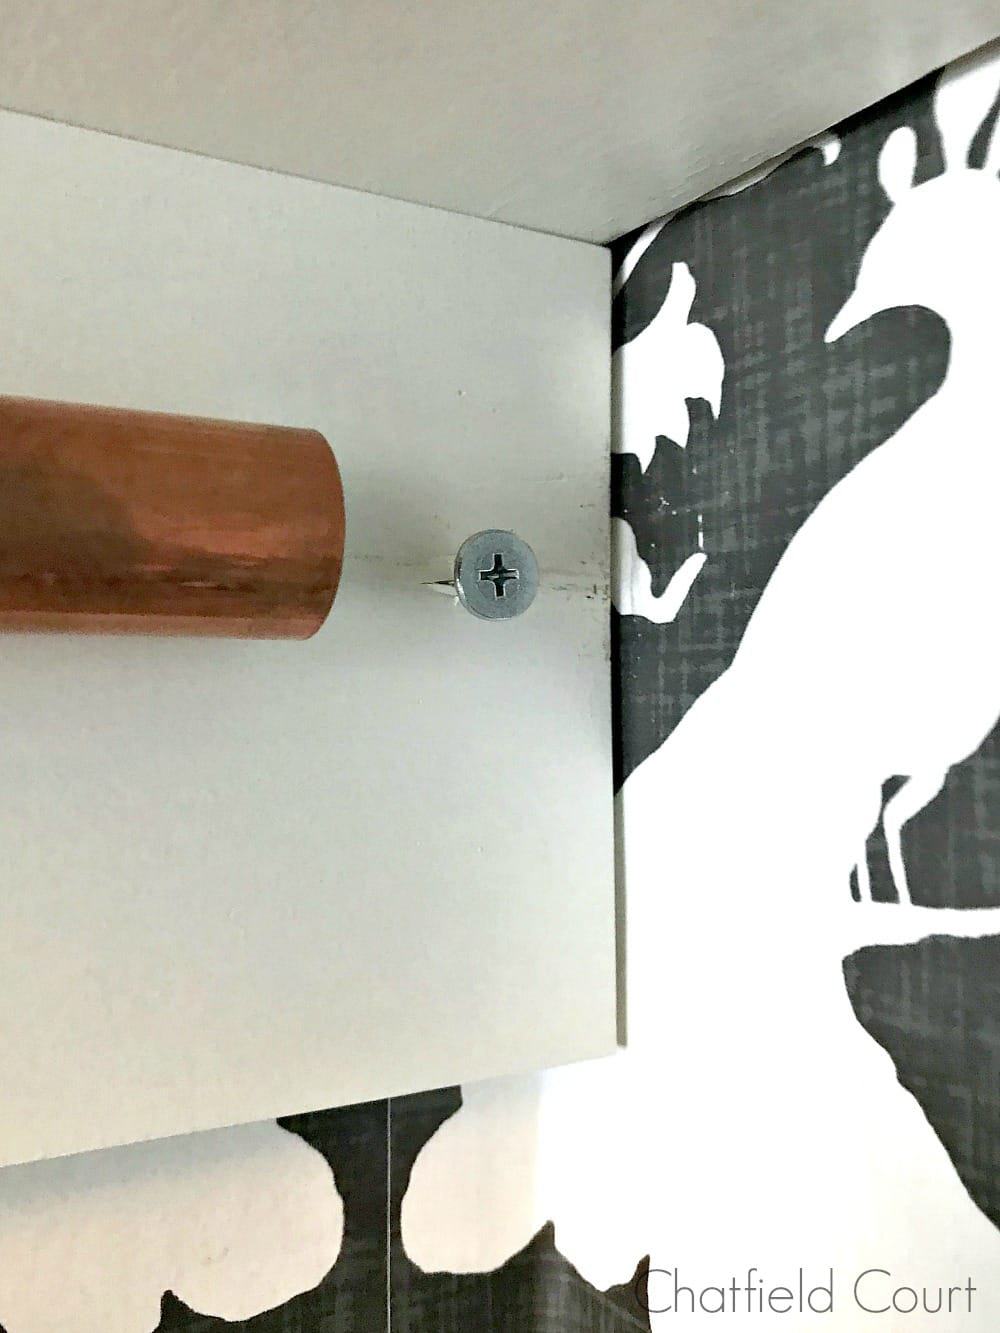 screw in wood board by copper pipe